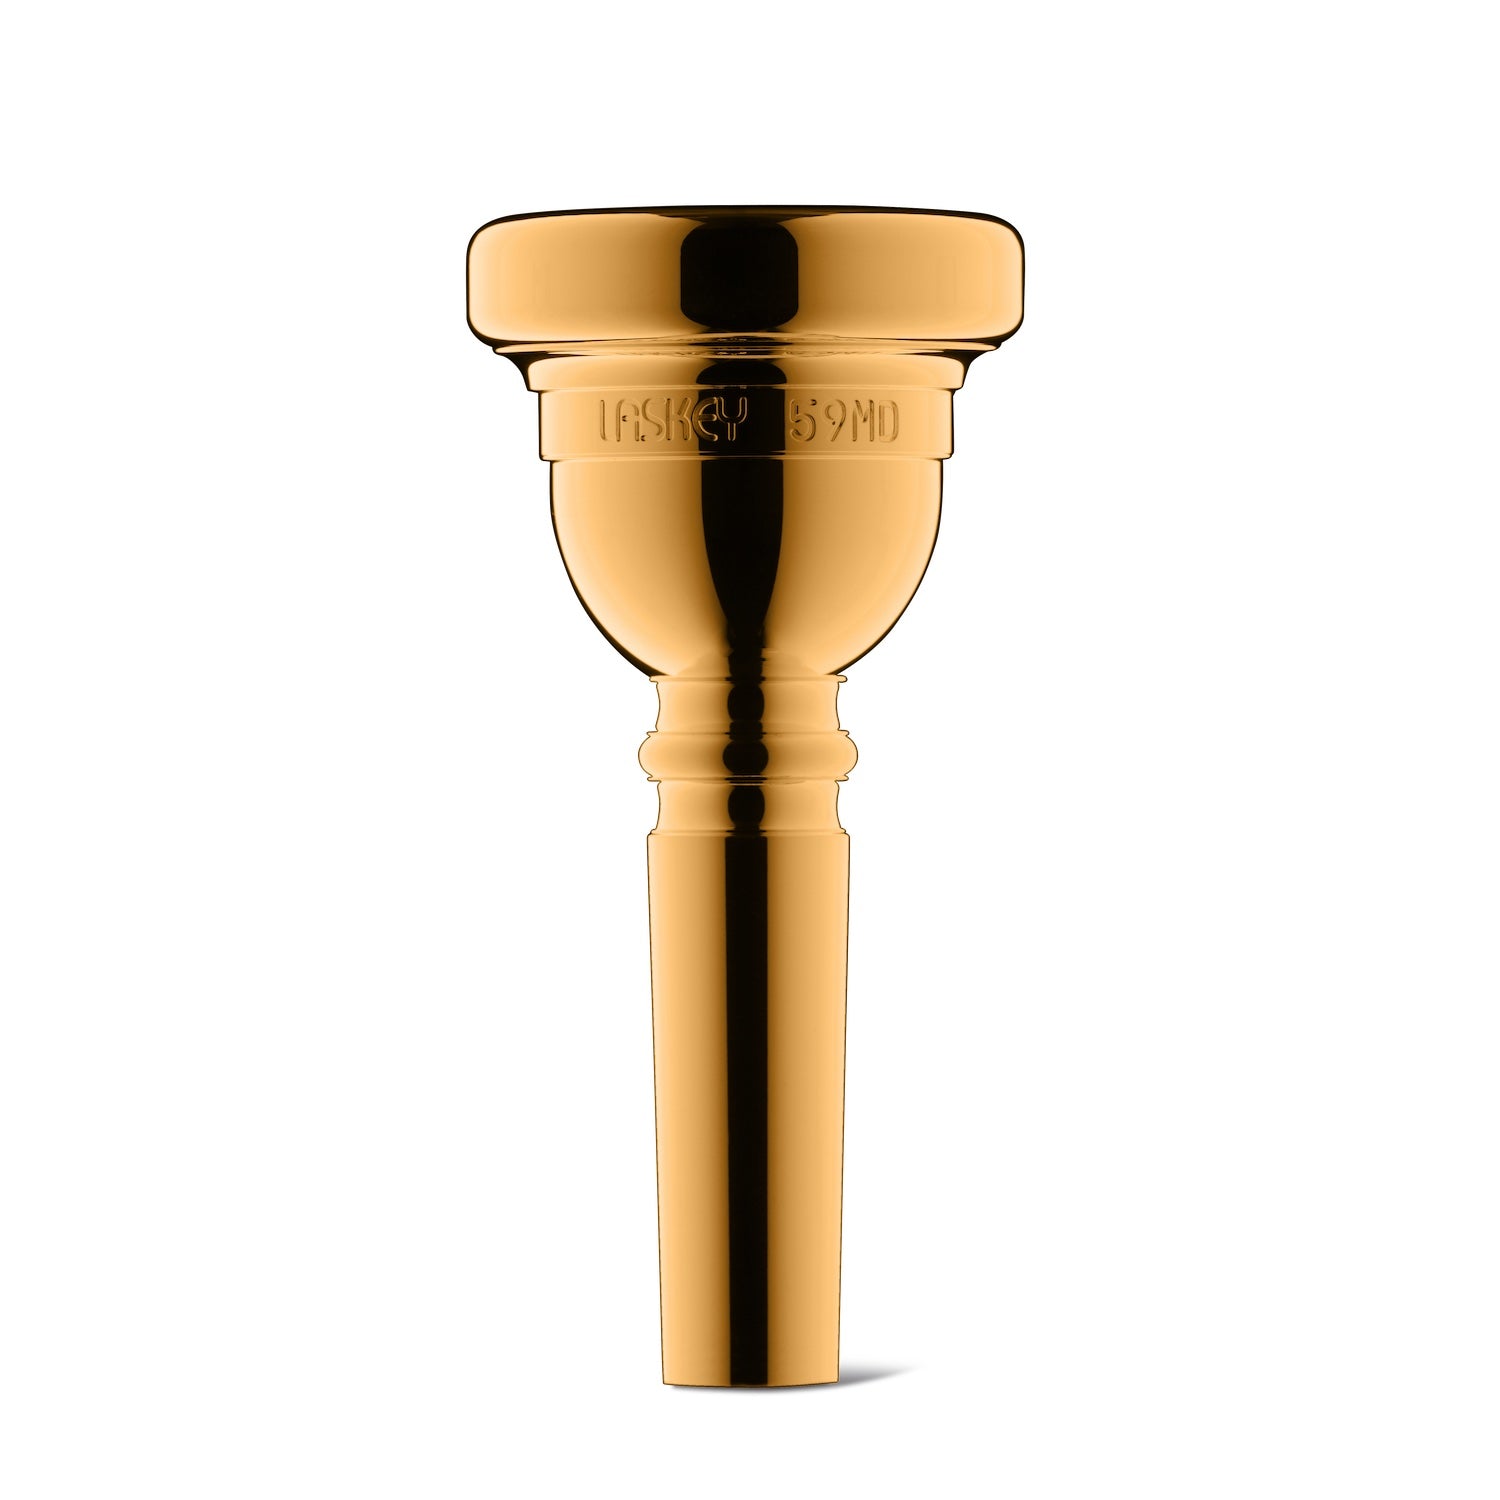 laskey-trombone-classic-mouthpiece-large-59MD-gold